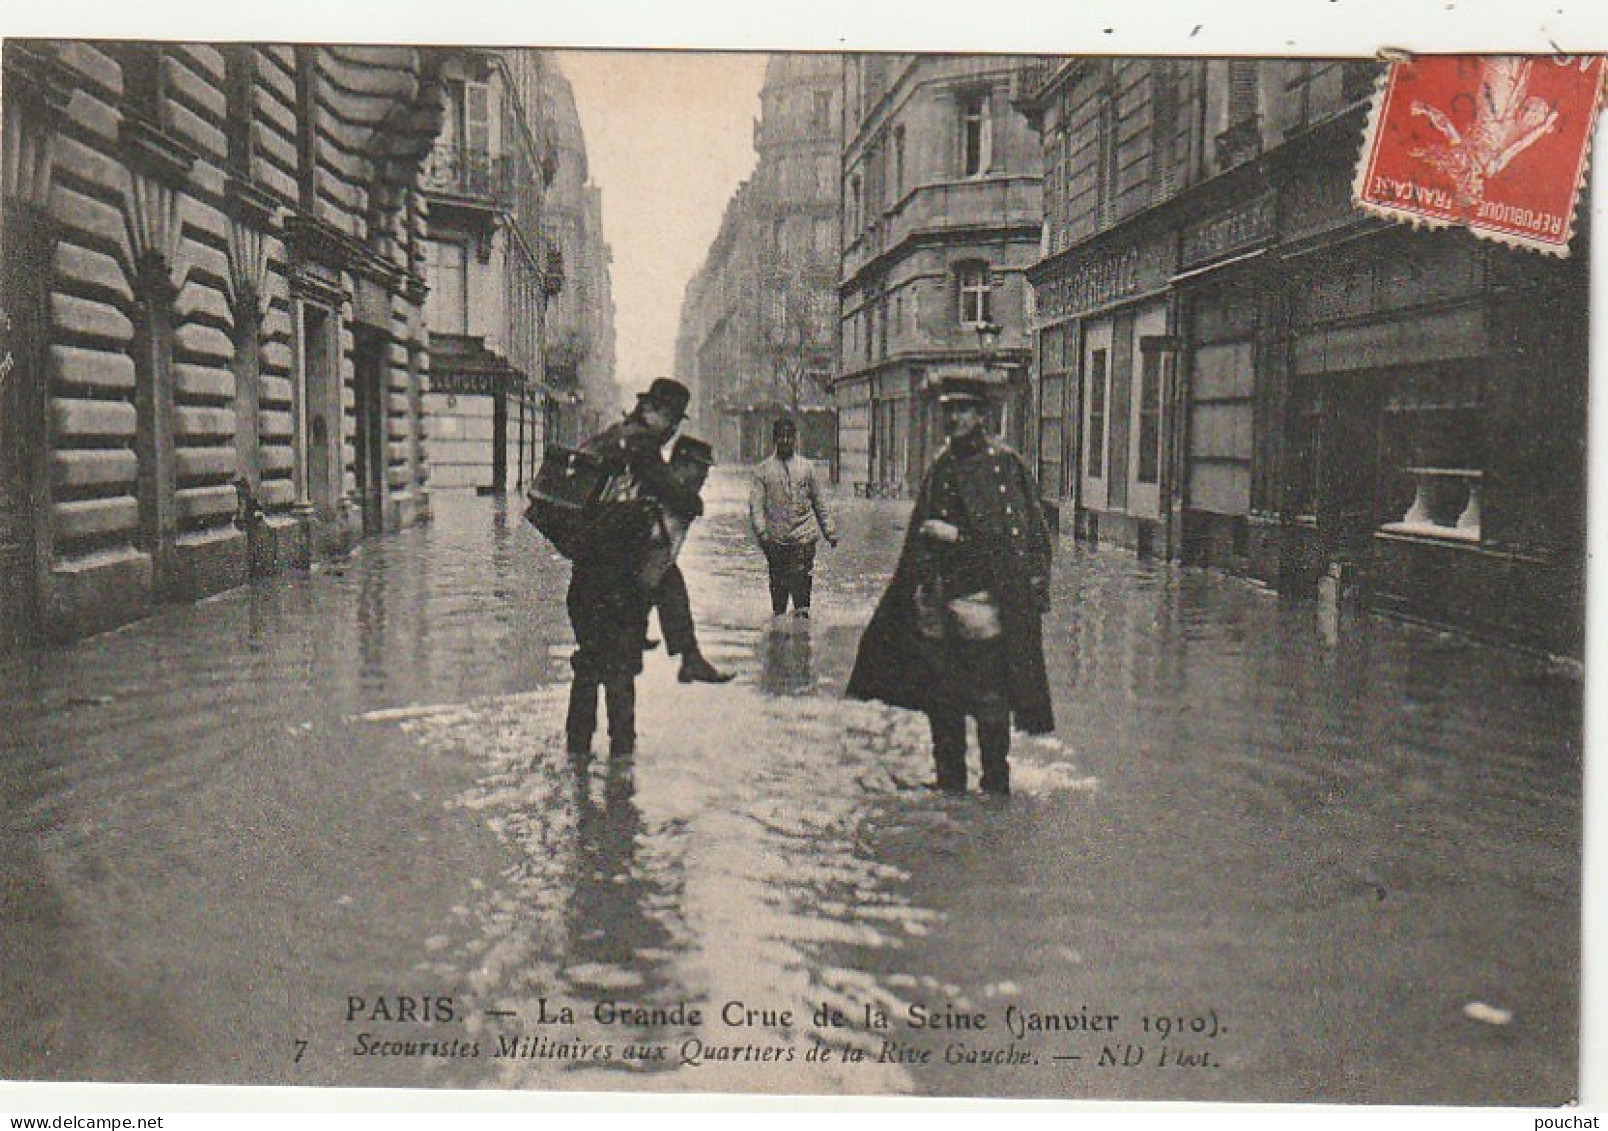 Z++ 3-(75) PARIS - LA GRANDE CRUE DE LA SEINE ( JANVIER 1910 ) - SECOURISTES MILITAIRES AUX QUARTIERS DE LA RIVE GAUCHE - Paris Flood, 1910